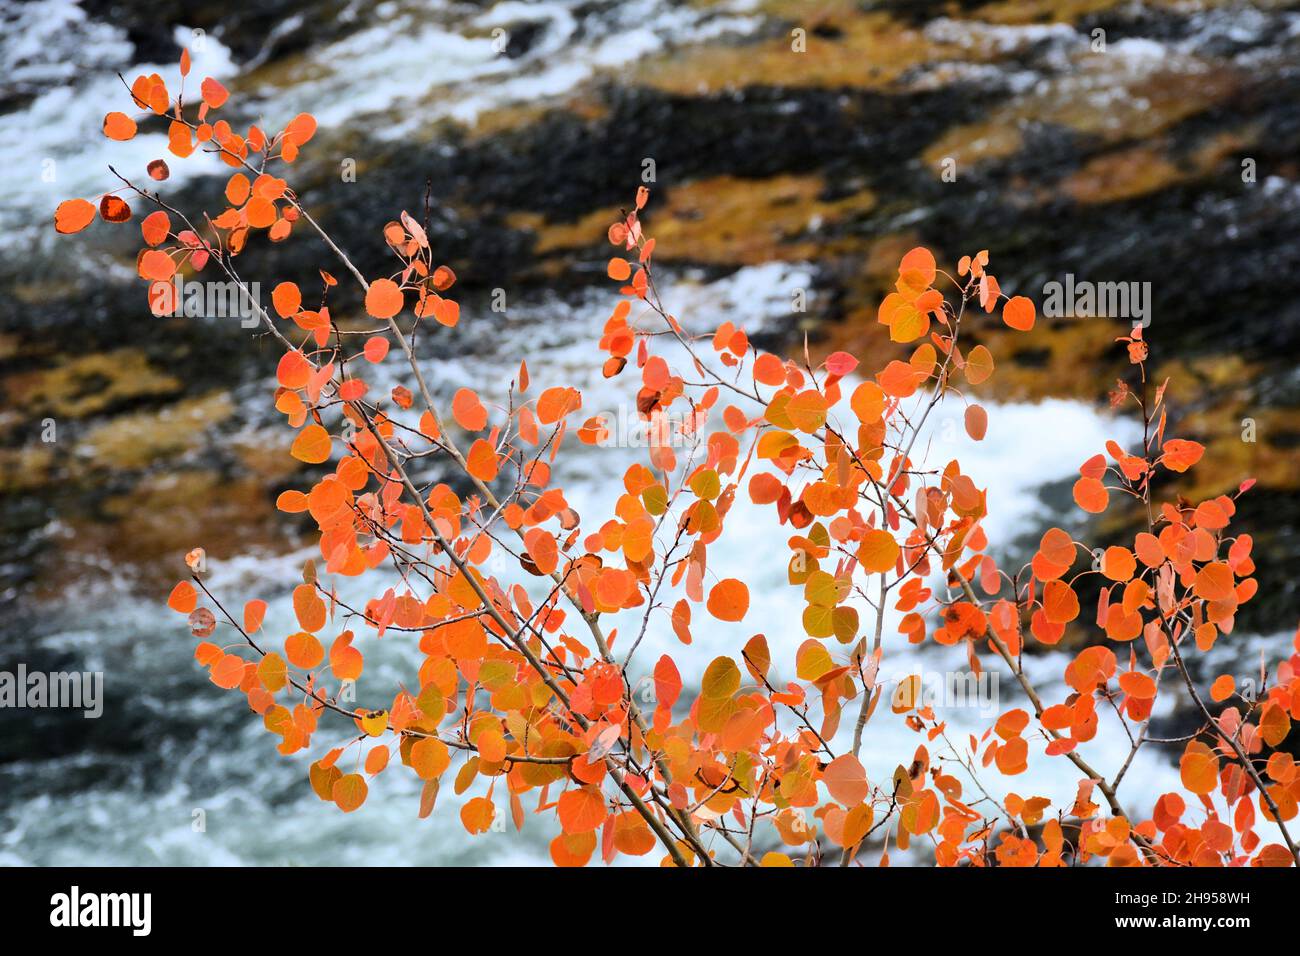 Foglie gialle e arancioni brillanti sullo sfondo di rocce e acqua schiumosa Foto Stock